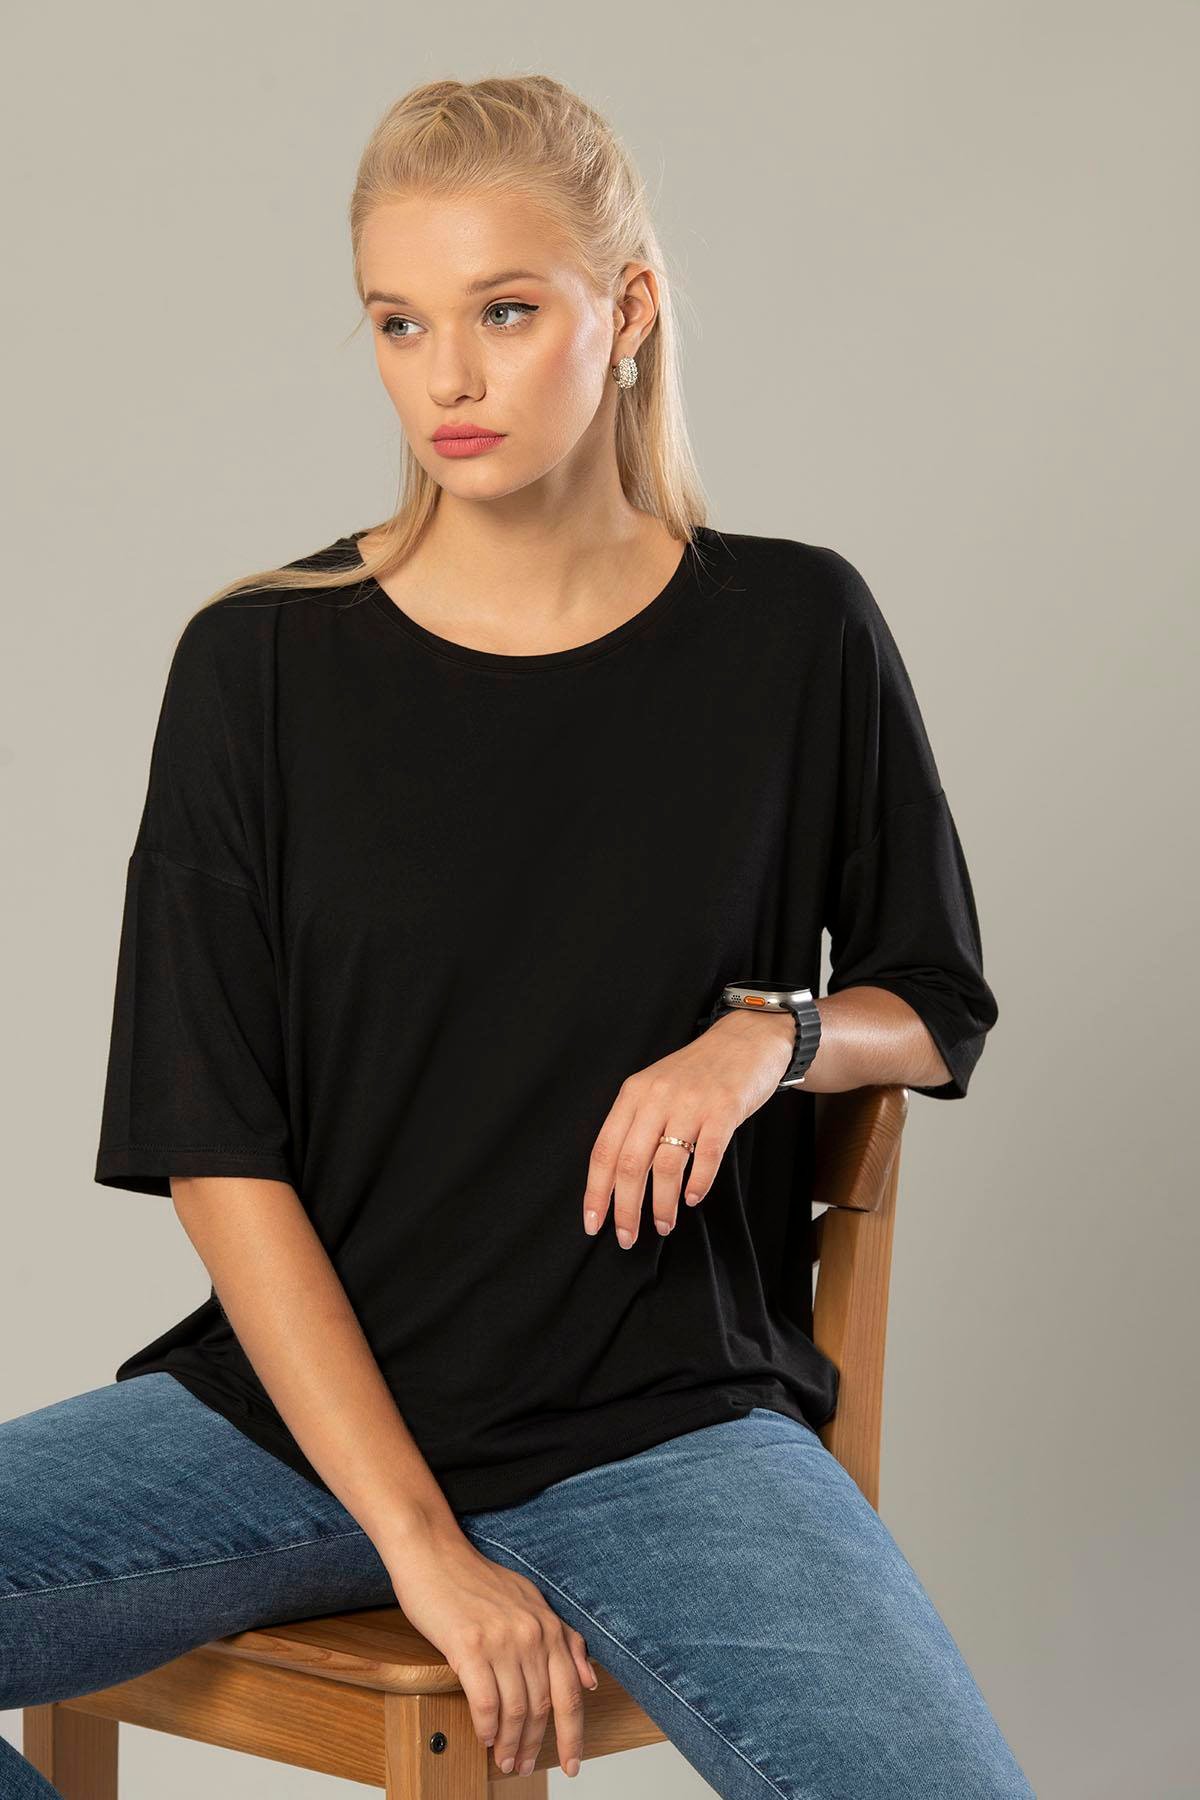 Erdem Weweus Siyah Kadın Viskon Oversize Salaş T-Shirt 238: Erdem İç Giyim